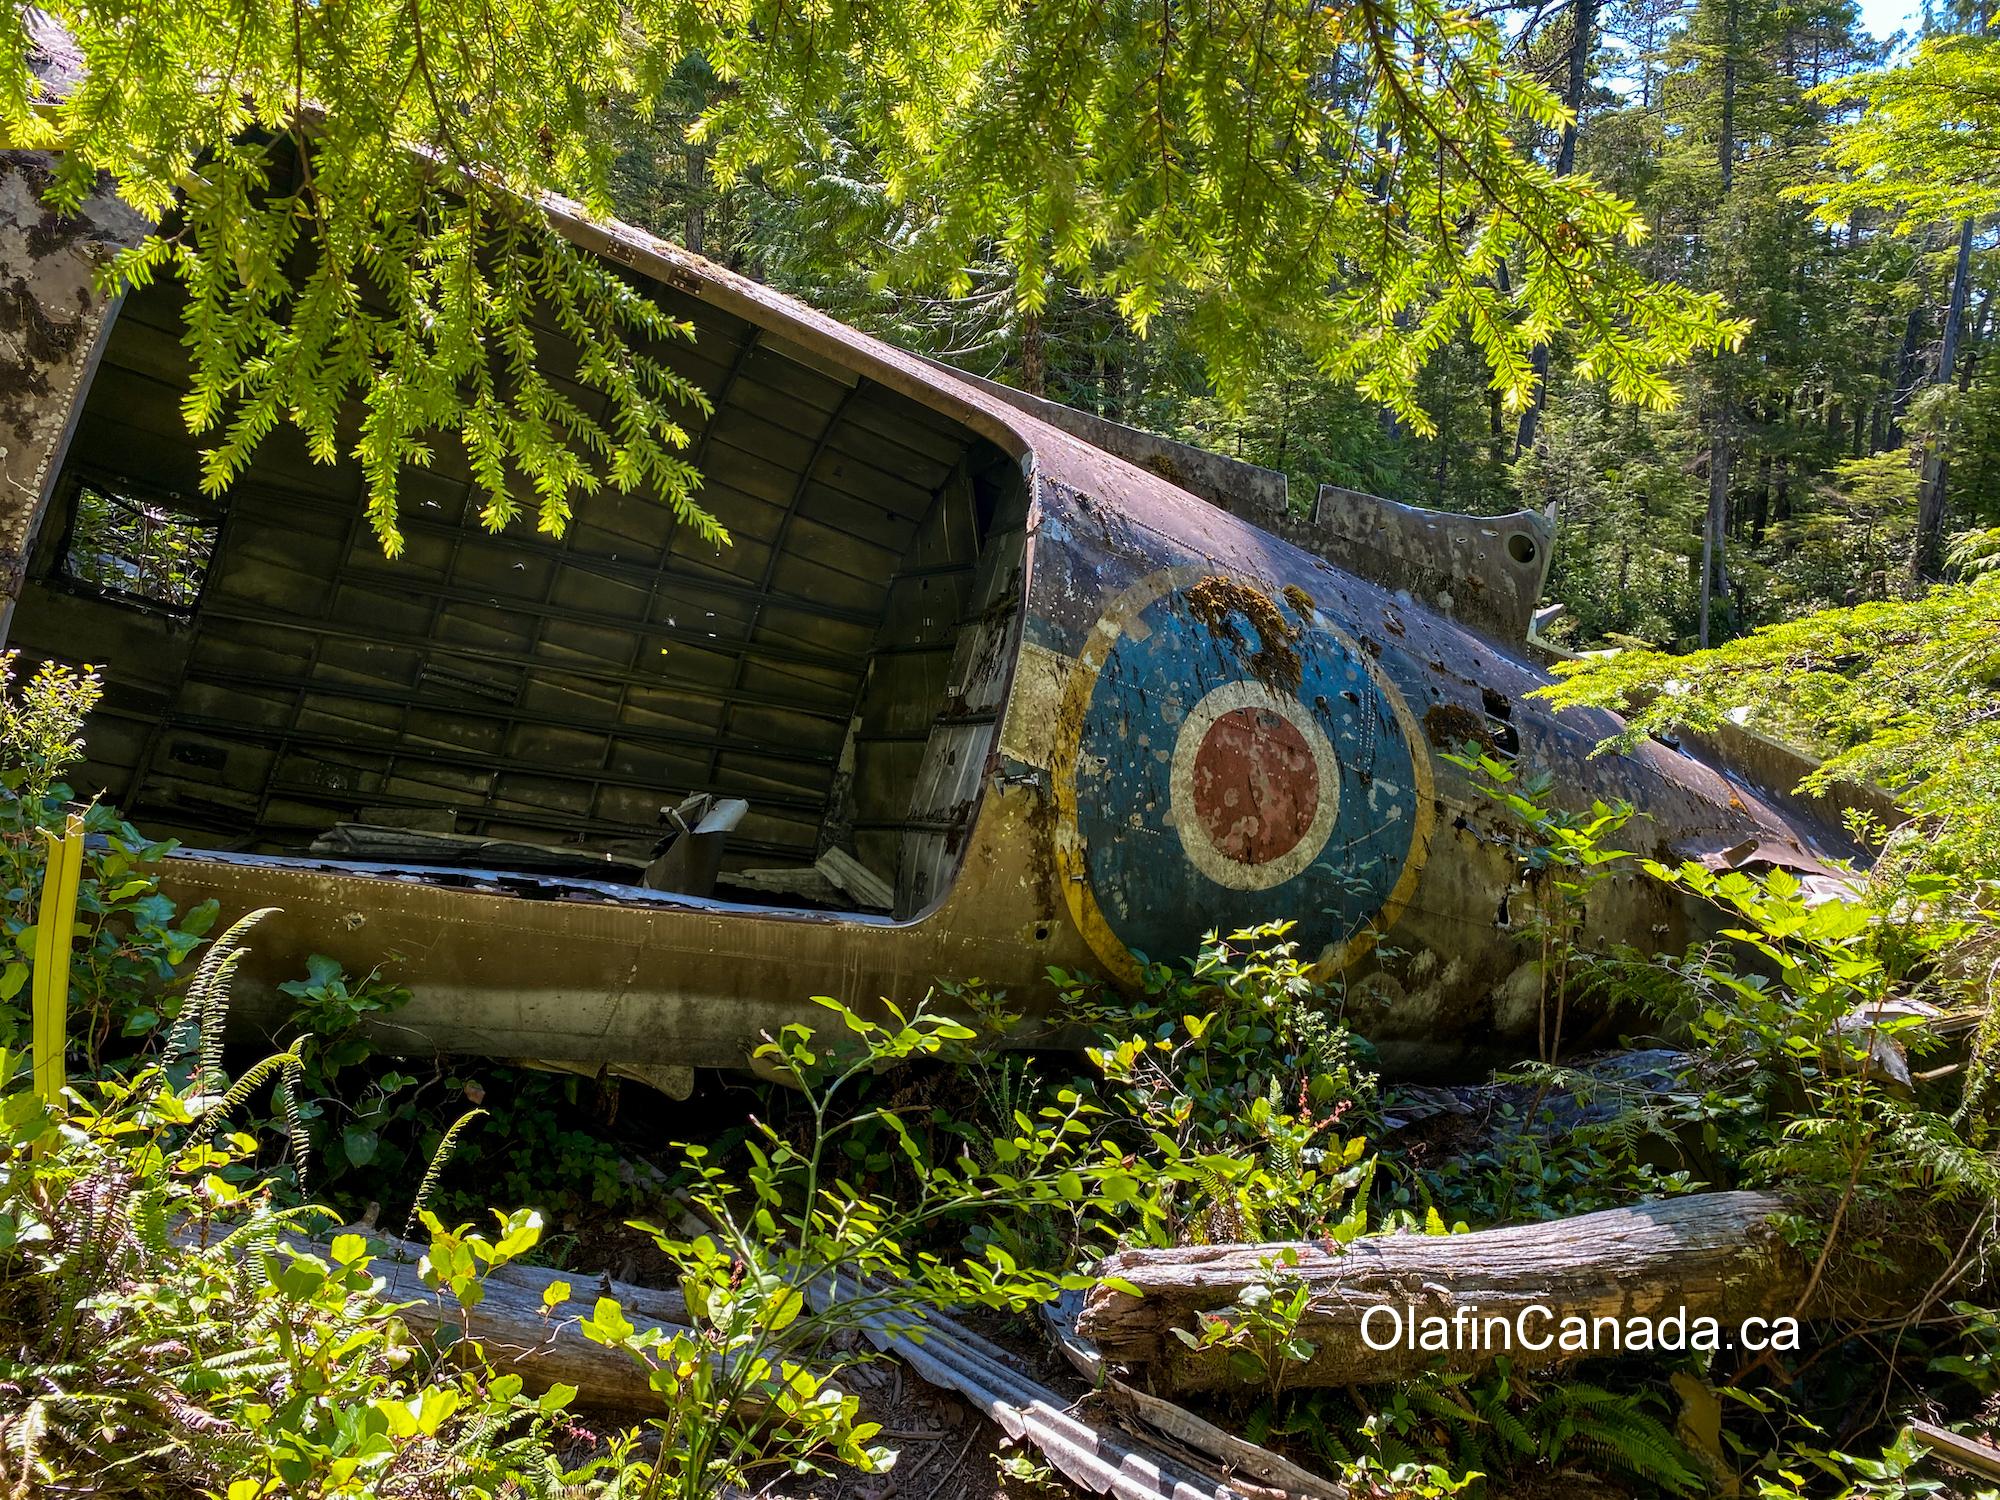 Dakota plane, crashed in 1944 near Port Hardy on Vancouver Island #olafincanada #britishcolumbia #discoverbc #abandoned #crashed #dakota